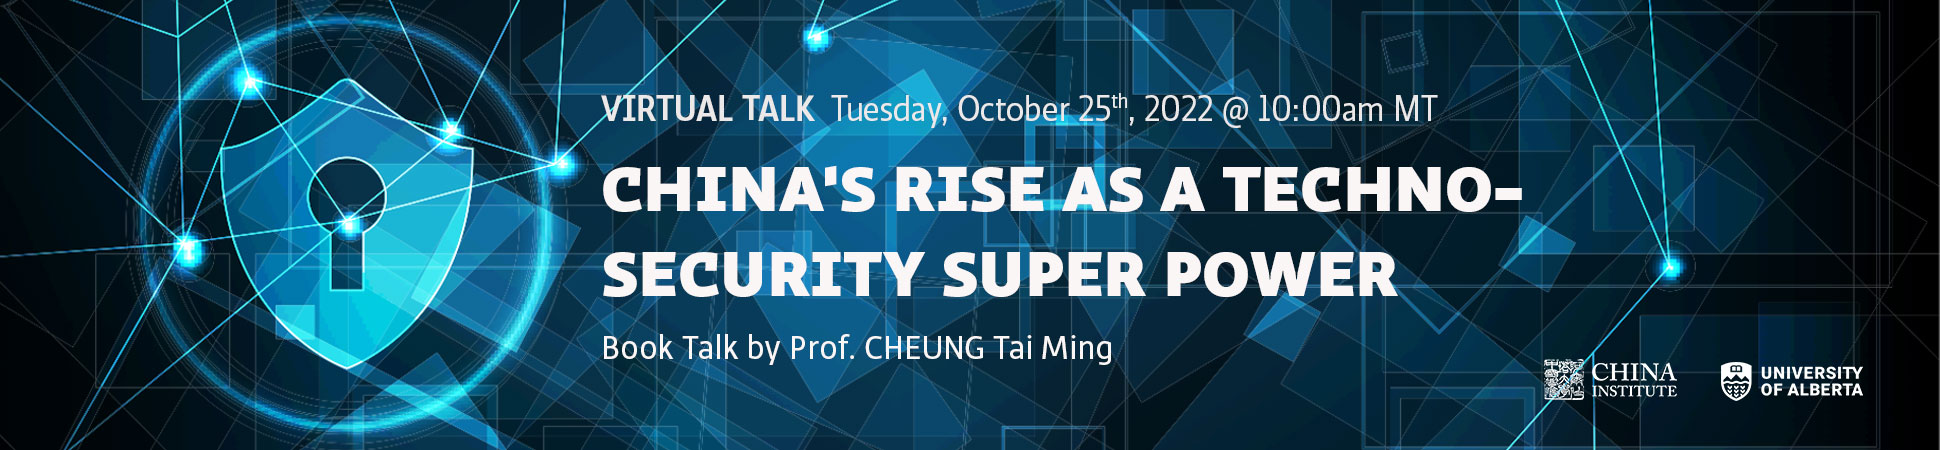 china techno security